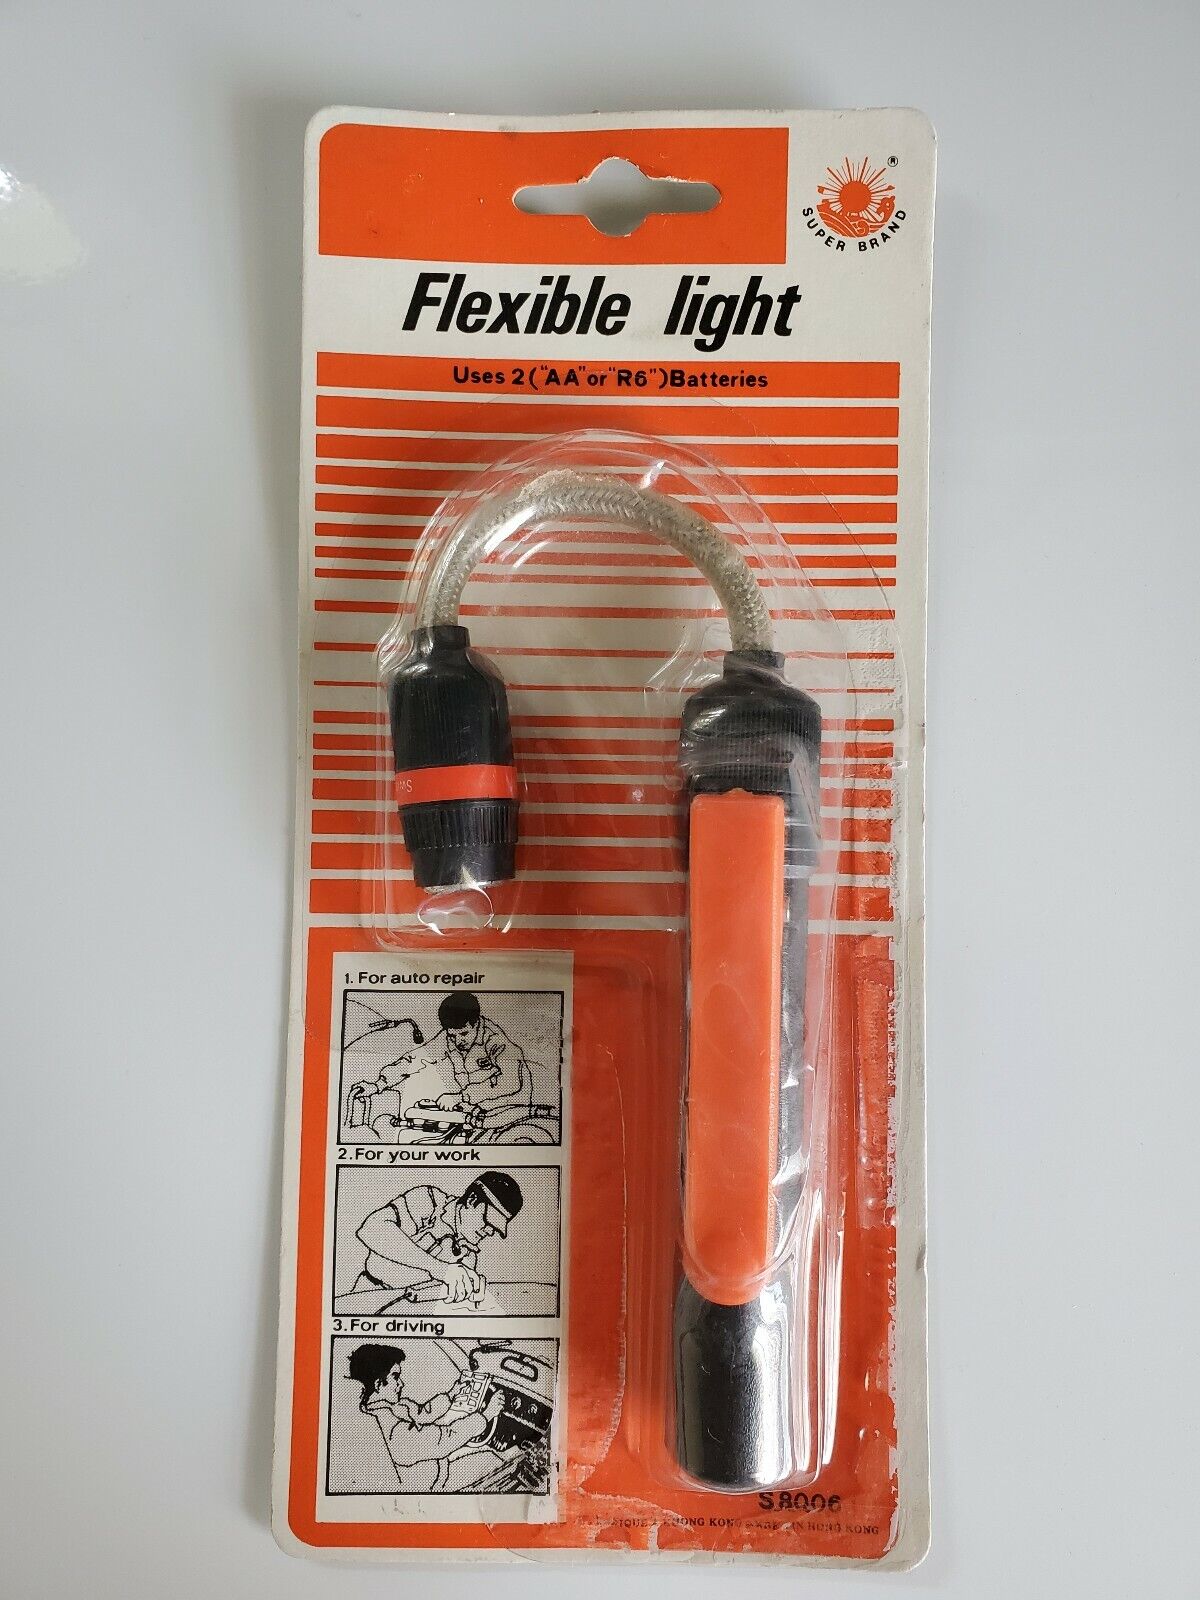 NOS-Vitntage 70's FLEXIBLE SUPER BRAND Flashlight New in Blister Pack Hong Kong